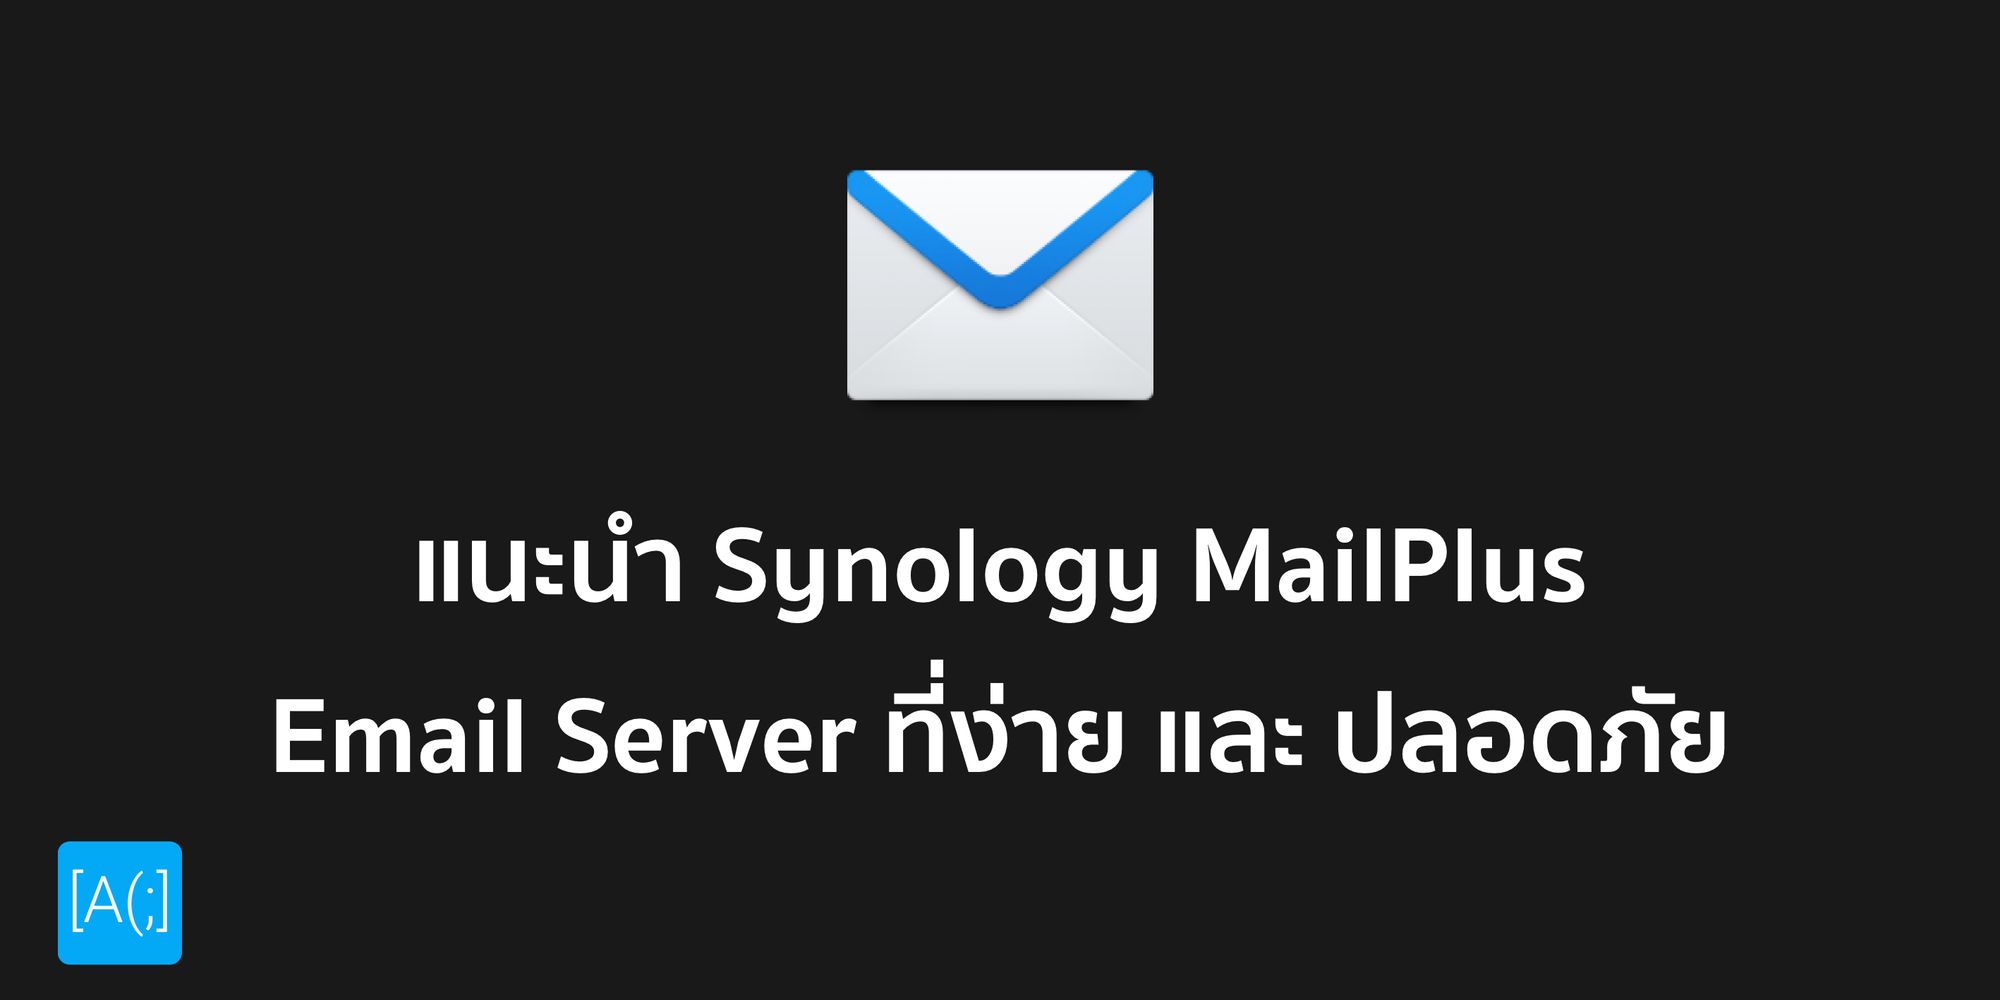 แนะนำ Synology MailPlus Email Server ที่ง่าย และ ปลอดภัย